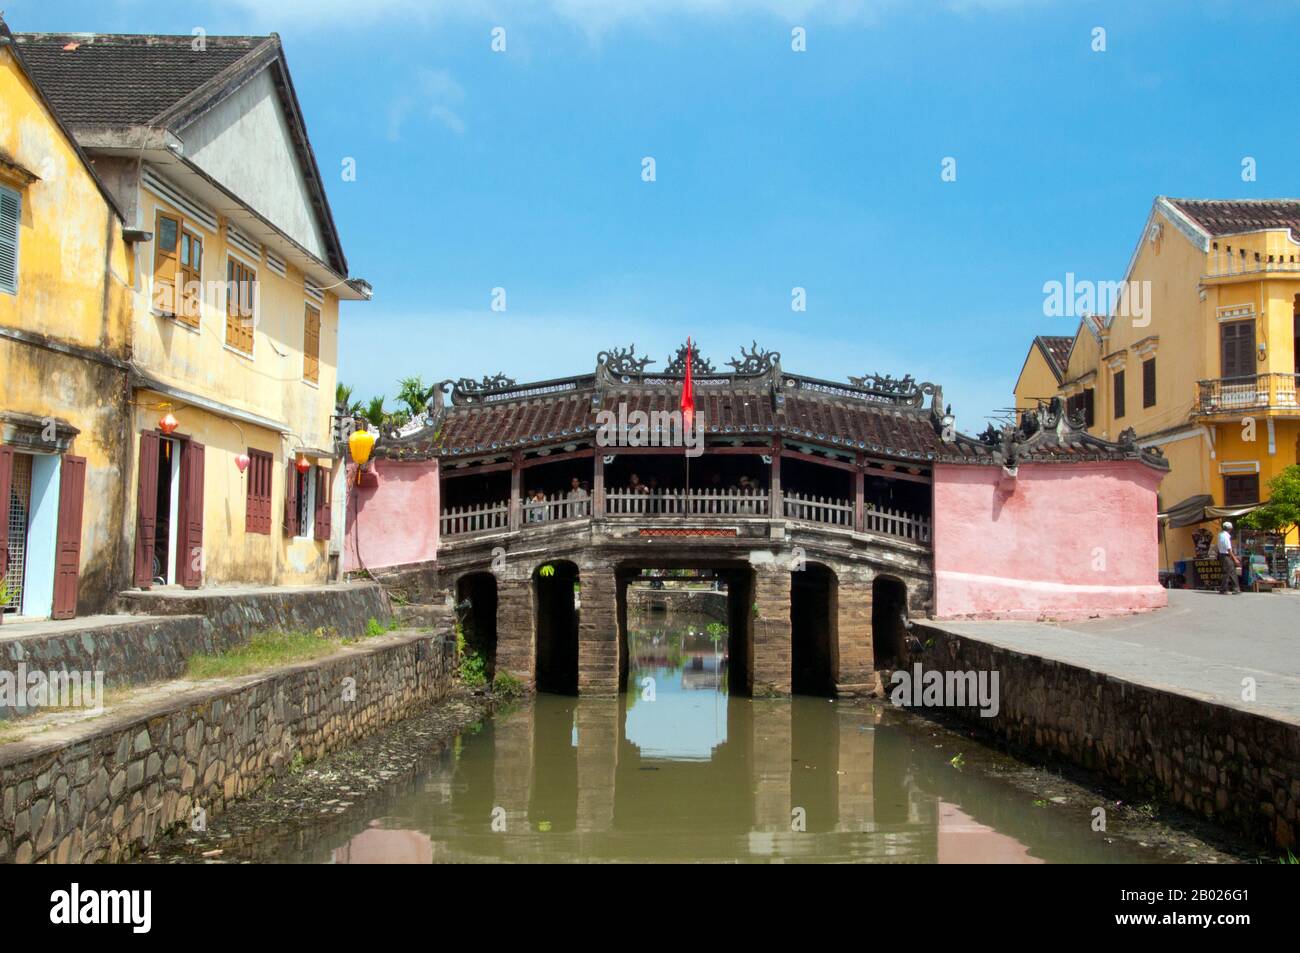 Vietnam: Die Japanische Überdachte Brücke, Hoi An. Die japanische überdachte Brücke ist ein Symbol von Hoi an und seiner reichen Kaufmannsgeschichte. Die Brücke wurde 1593 von der japanischen Handelsgemeinschaft gebaut, um sie mit dem chinesischen Viertel weiter östlich zu verbinden. Die kleine aber historische Stadt Hoi an liegt am Fluss Thu Bon, 30km km (18 Meilen) südlich von Danang. Während der Zeit der Nguyen-Herrscher (1558 - 1777) und sogar unter den ersten Nguyen-Kaisern war Hoi an - damals bekannt als Faifo - ein wichtiger Hafen, der regelmäßig von Europa und dem ganzen Osten aus besucht wurde. Stockfoto